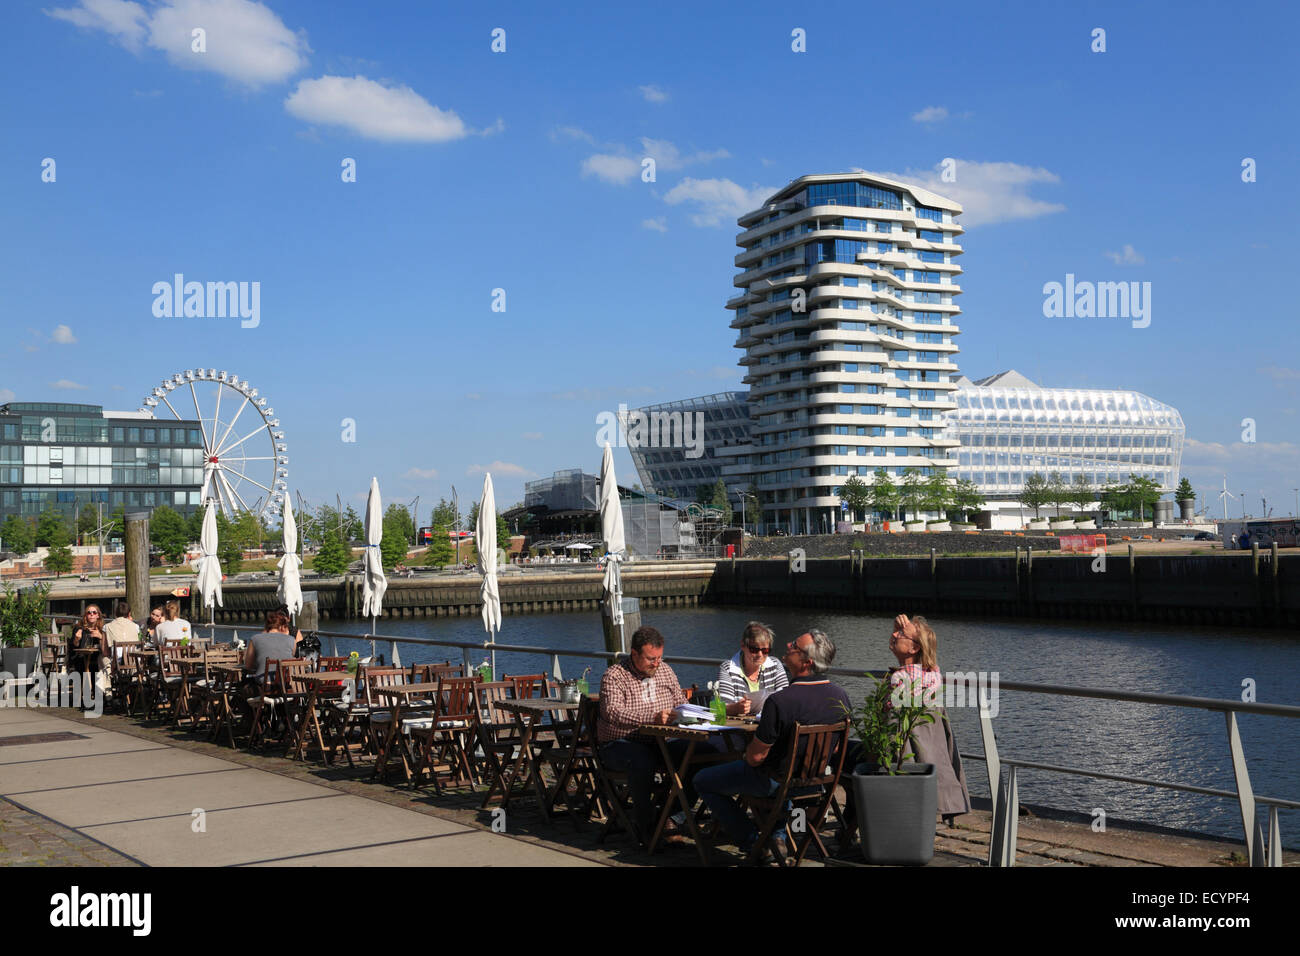 Cafe en el Dalmannkai, vista a Marco Polo y Unilever, Edificio Torre, Hafencity, Hamburgo, Alemania, Europa Foto de stock